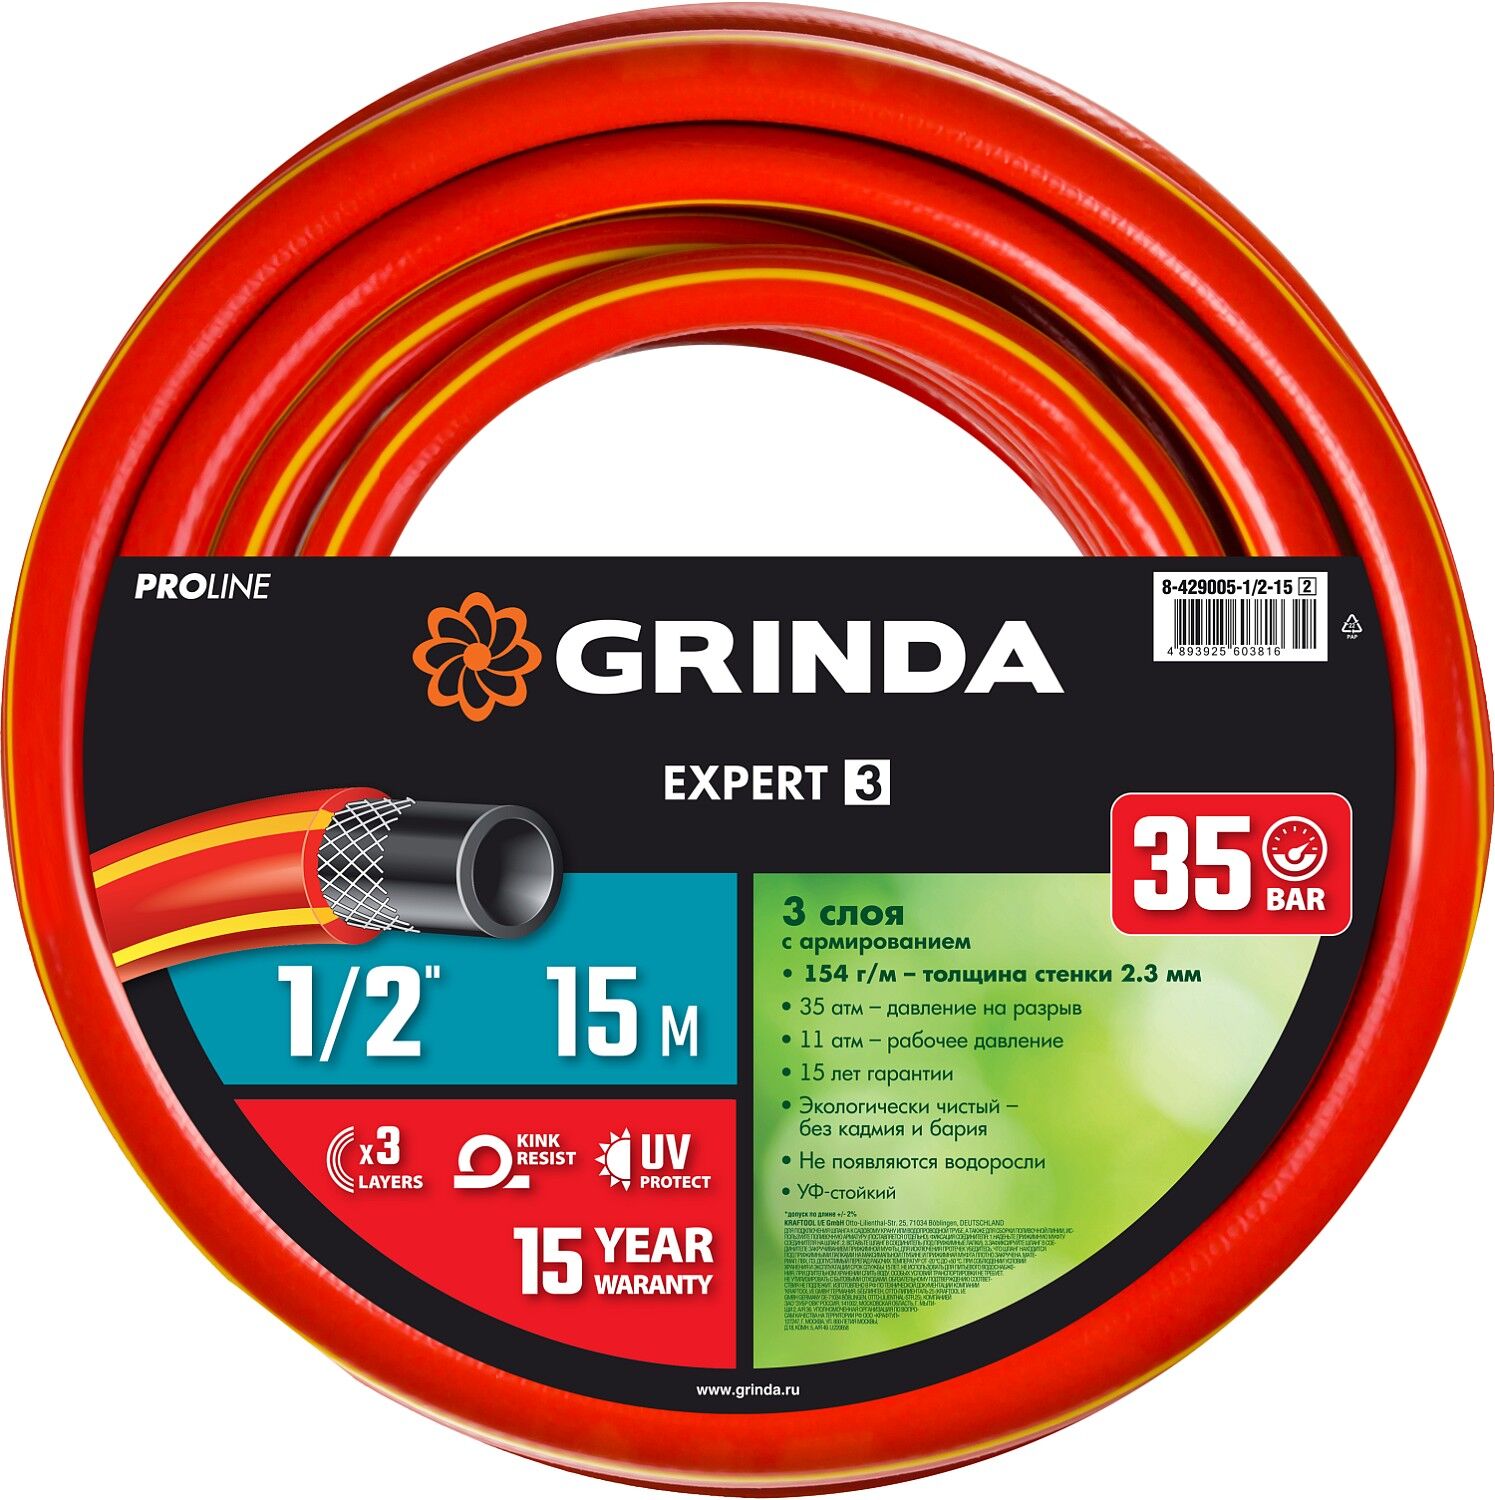 GRINDA EXPERT 3, 1/2″, 15 м, 35 атм, трёхслойный, армированный, поливочный шланг, PROLine (8-429005-1/2-15) 8-429005-1/2